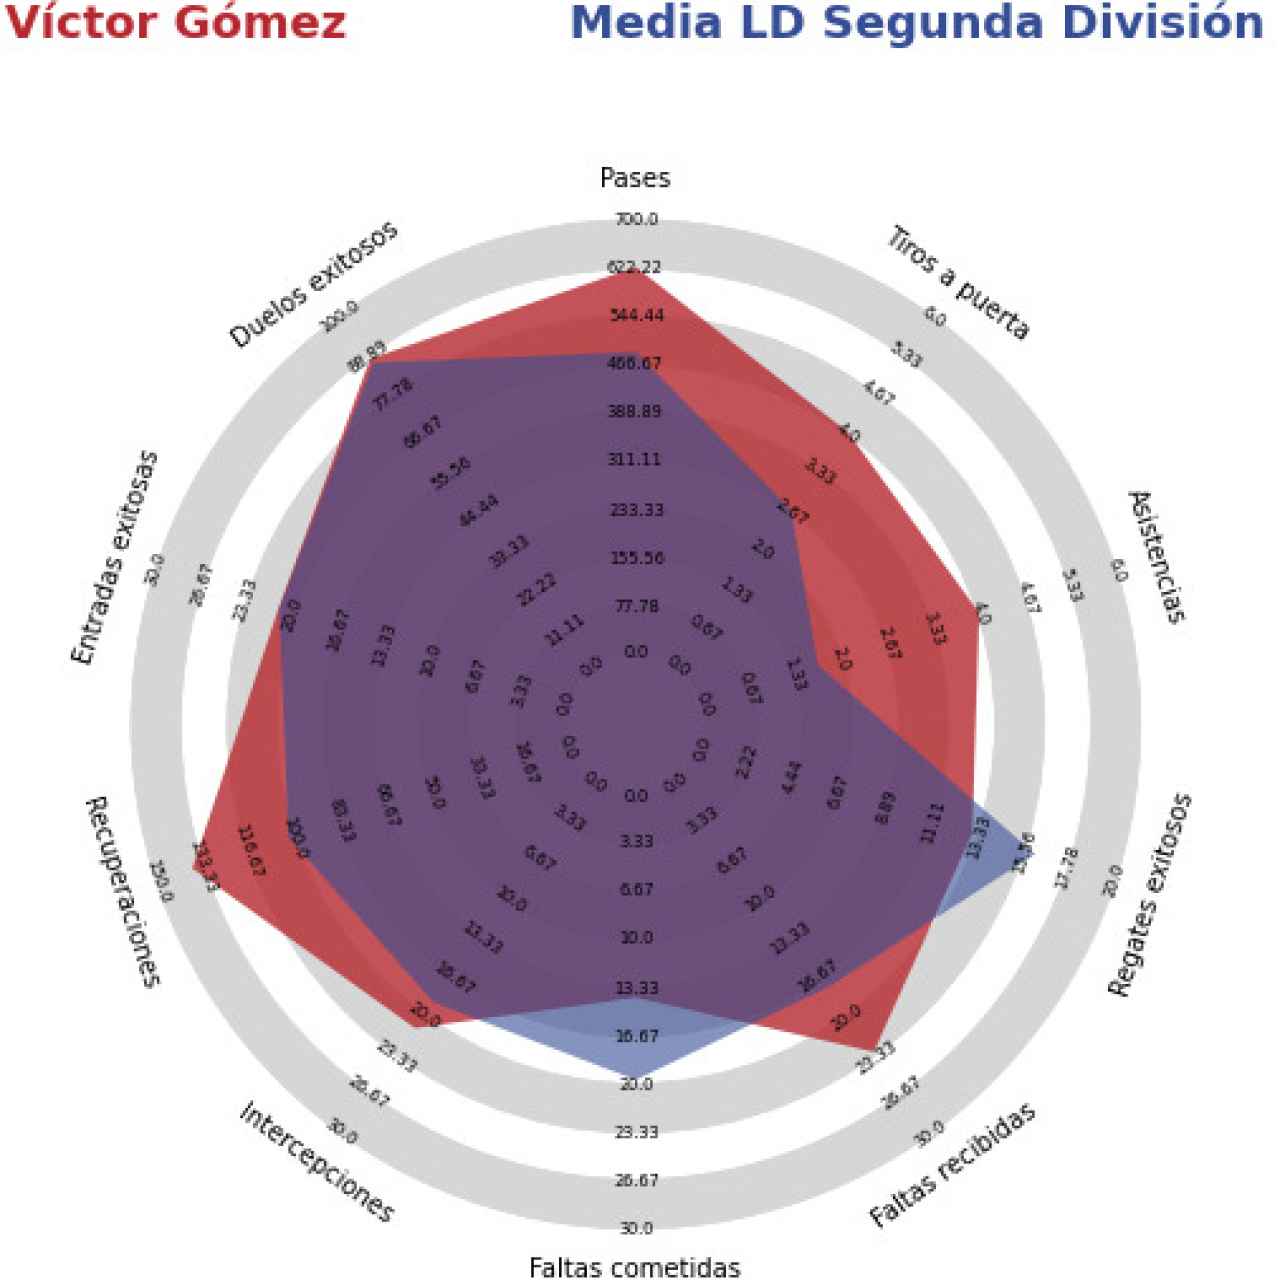 Comparación entre Víctor Gómez (zona roja) y los laterales derechos que han jugado más de 1.200 minutos (zona azul).